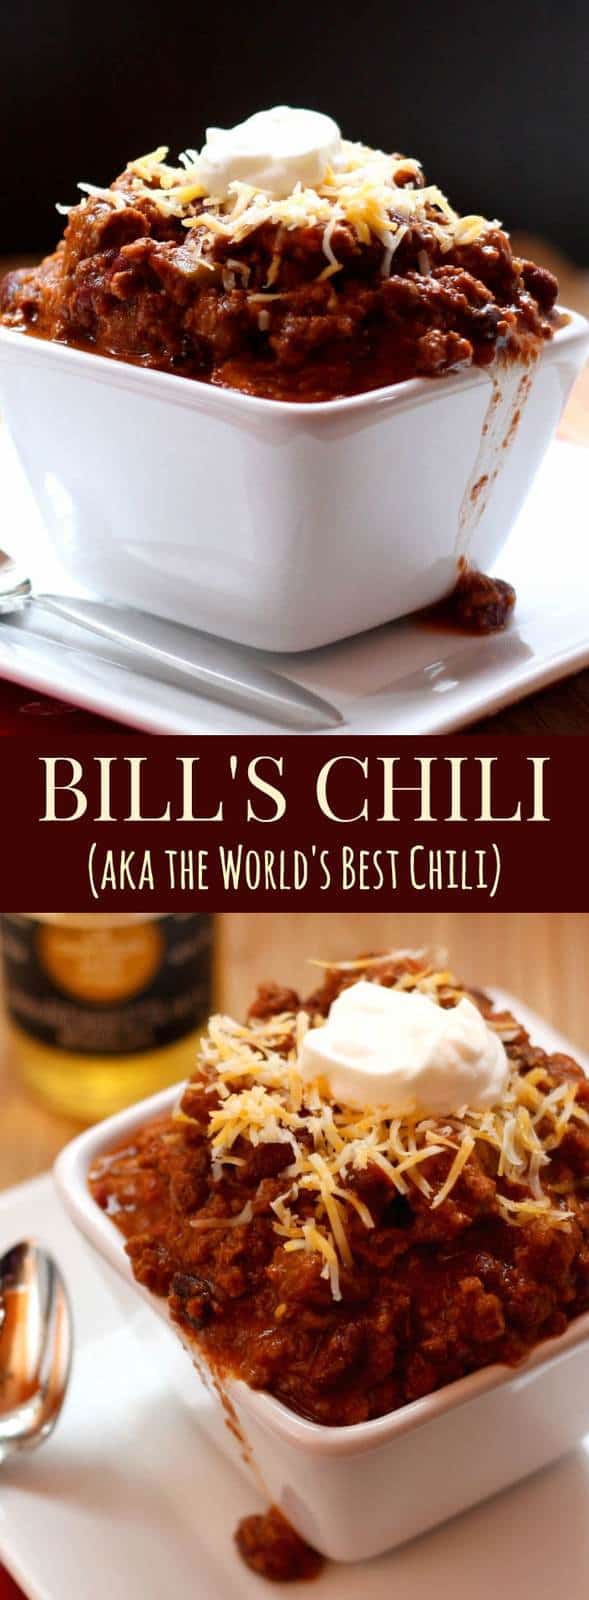 is chili still dating bill